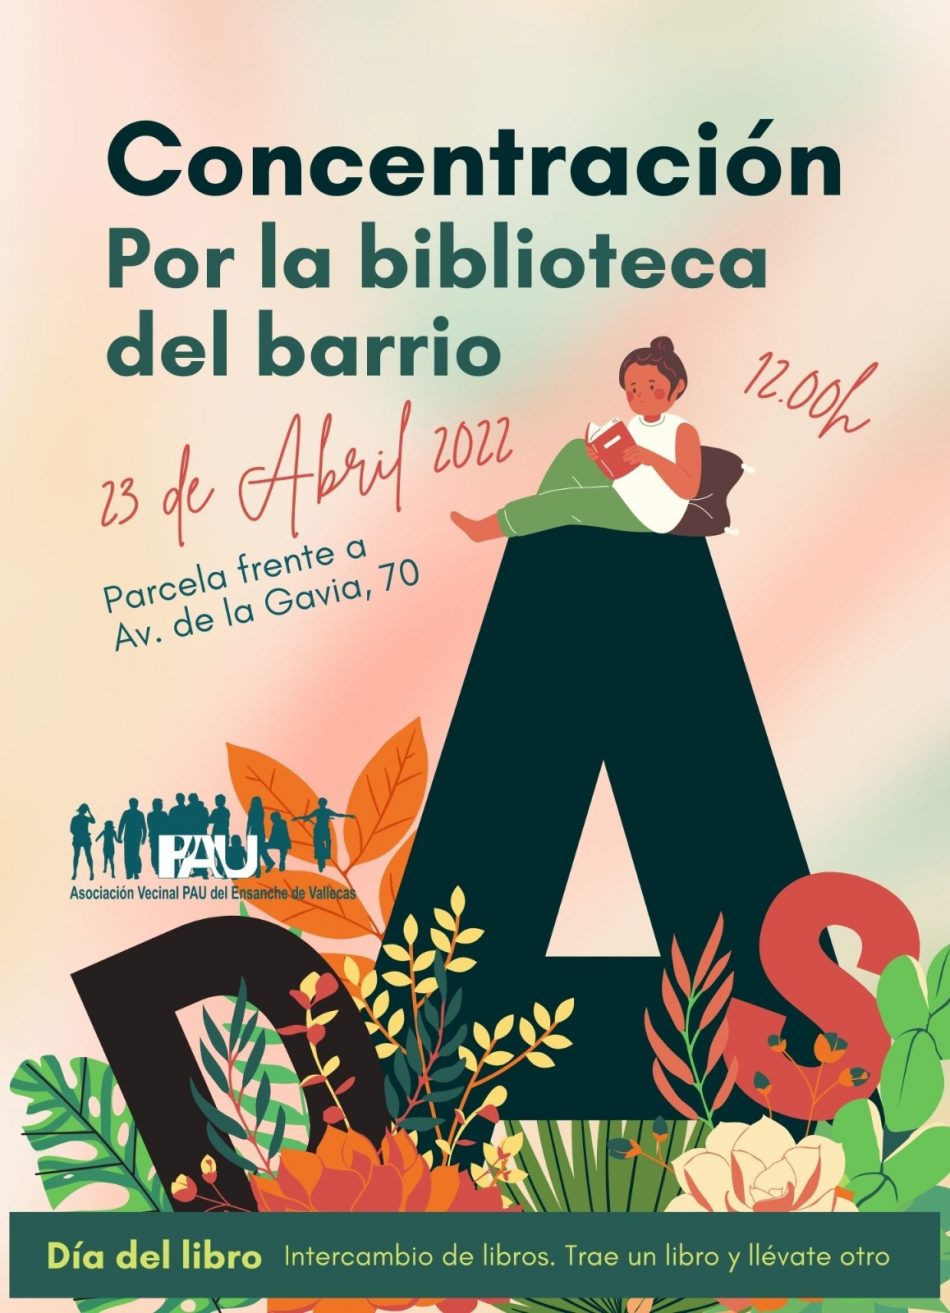 Día del Libro: las asociaciones vecinales de Madrid siguen reclamando bibliotecas públicas y el acceso a la cultura en los barrios